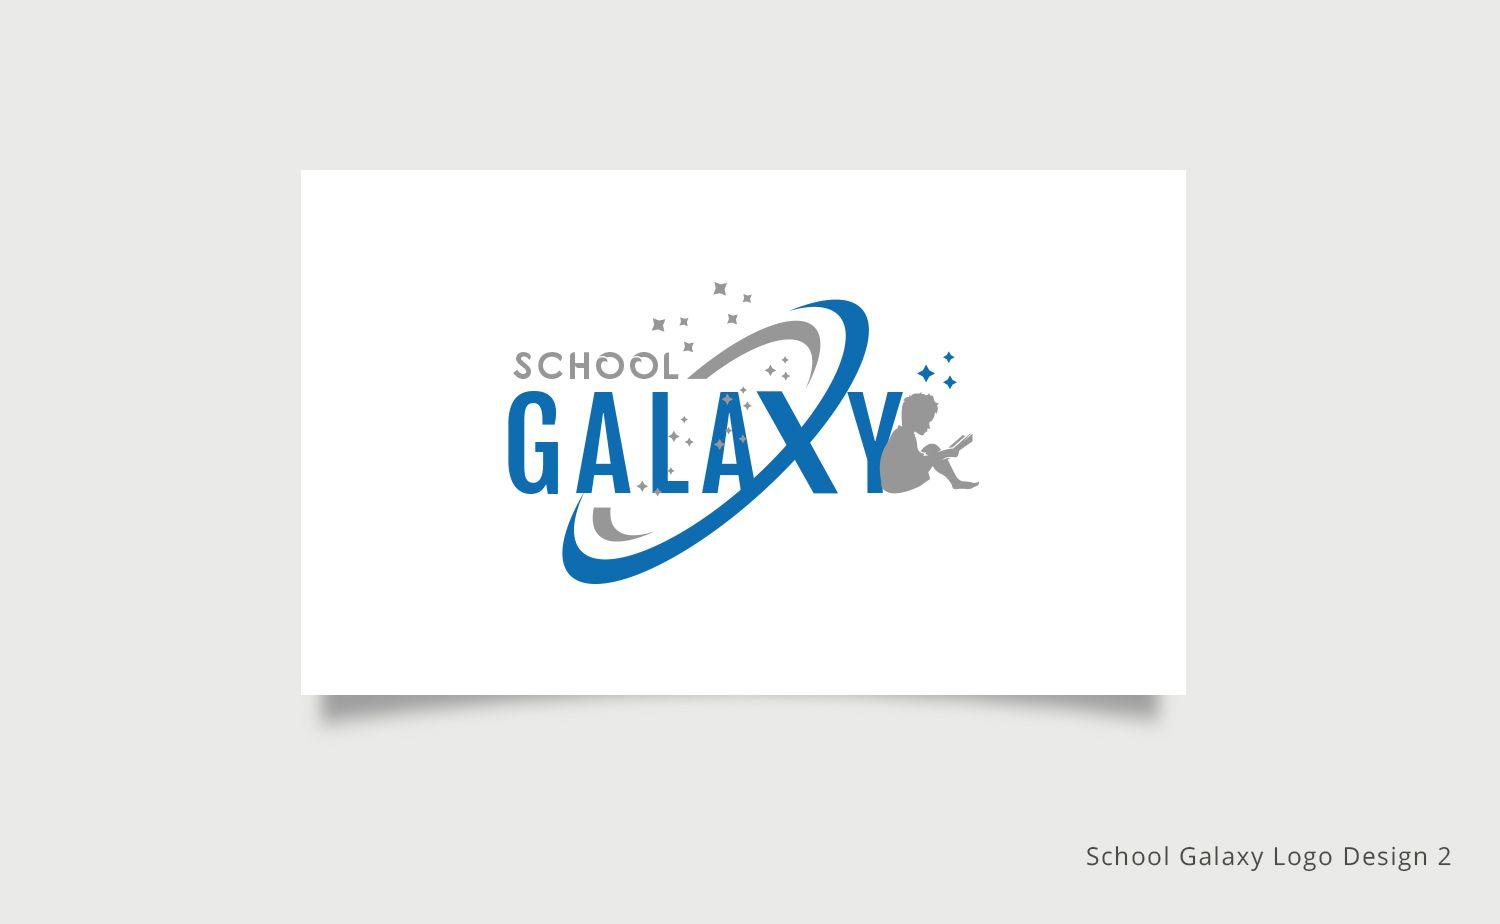 Galazy Logo - Modern, Professional, Education Logo Design for School Galaxy